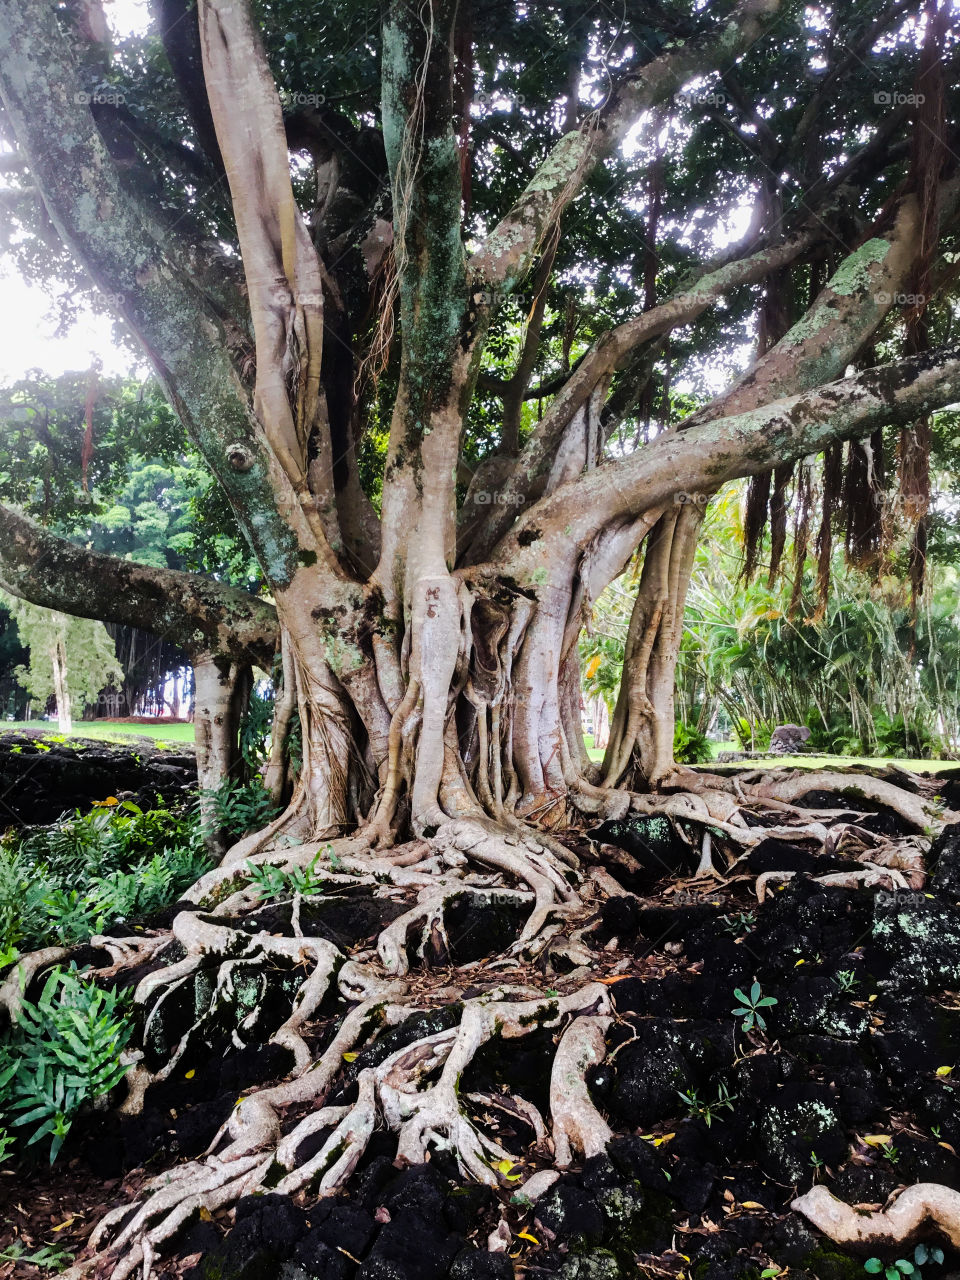 Banyan tree at Liliuokalani Park and Gardens